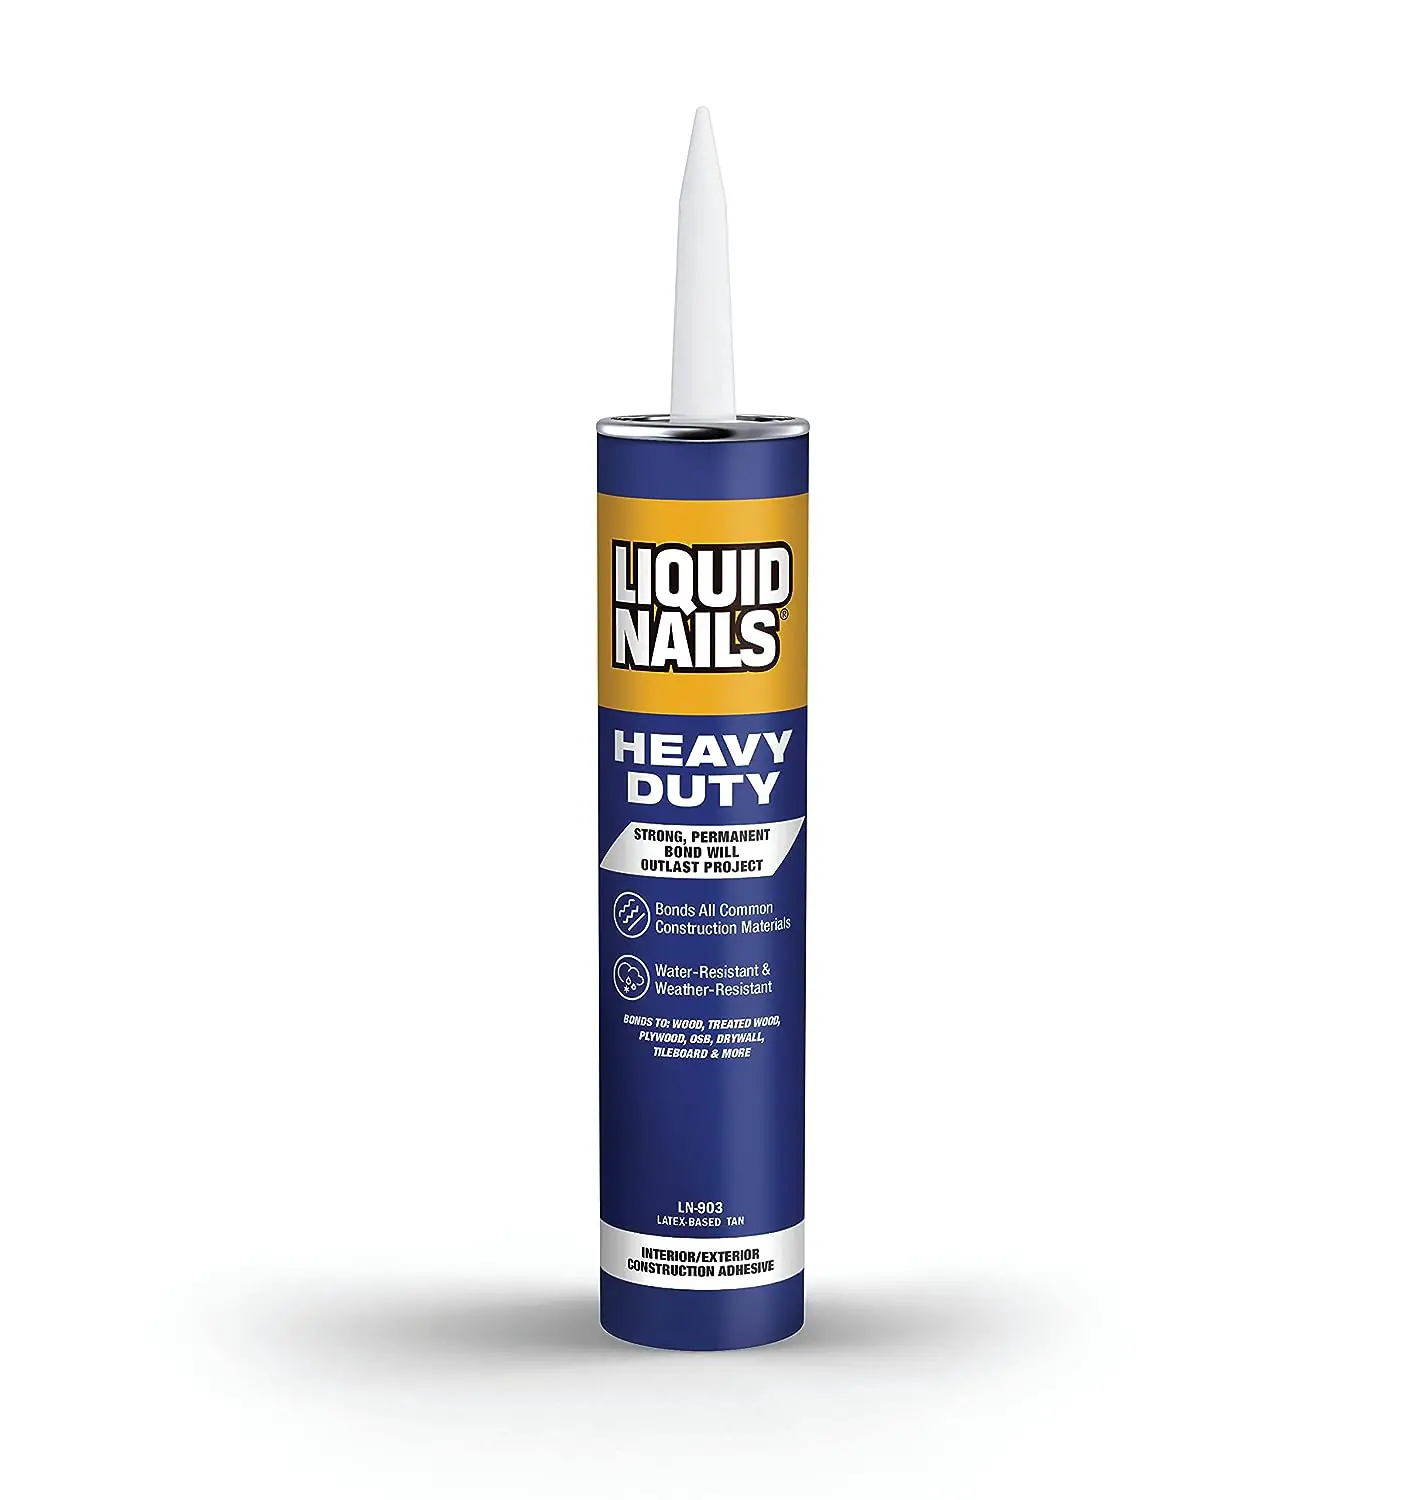 Liquid Nails Heavy Duty Construction Adhesive